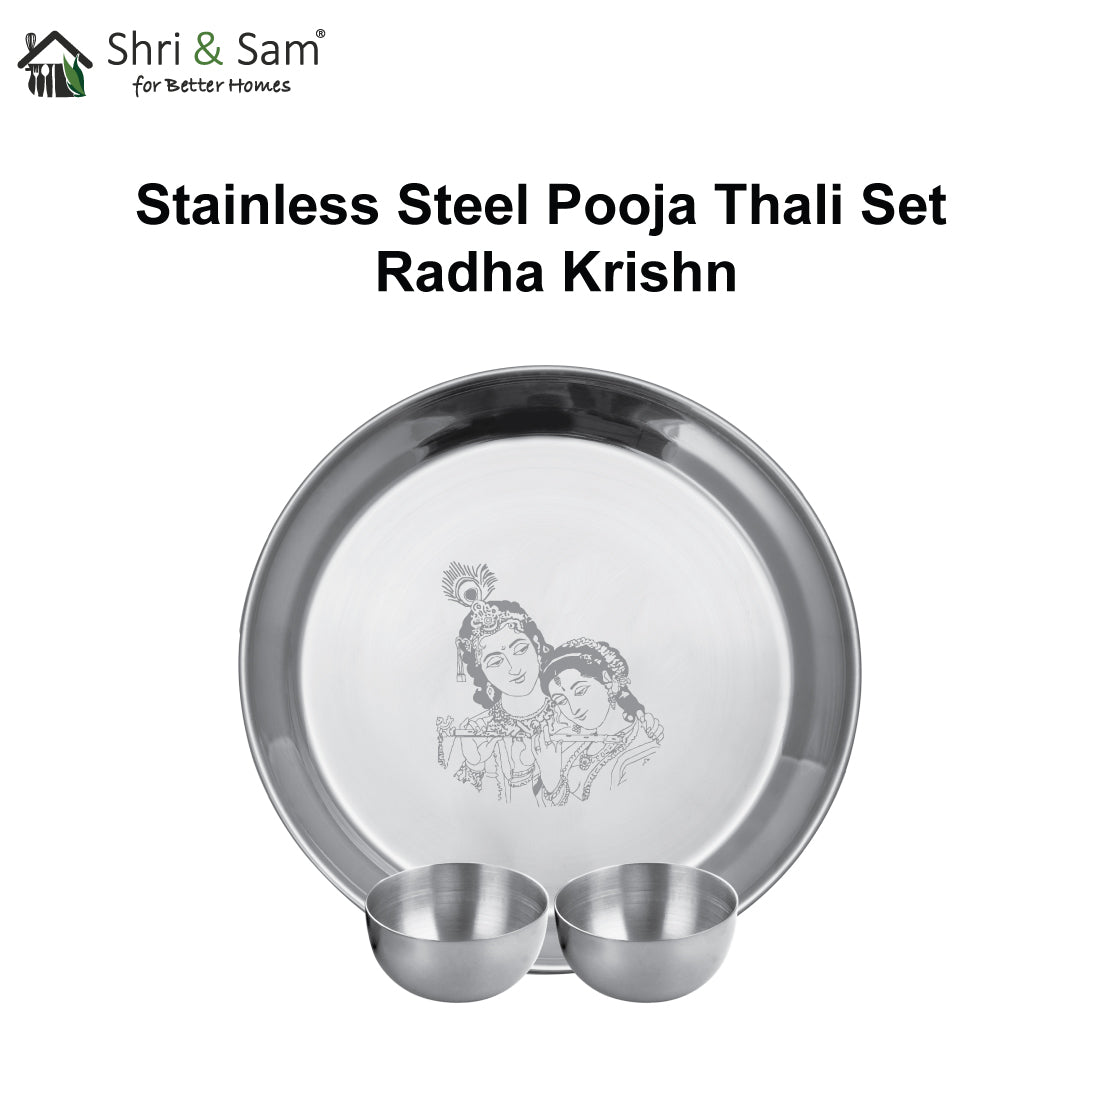 Stainless Steel Pooja Thali Set Radha Krishn